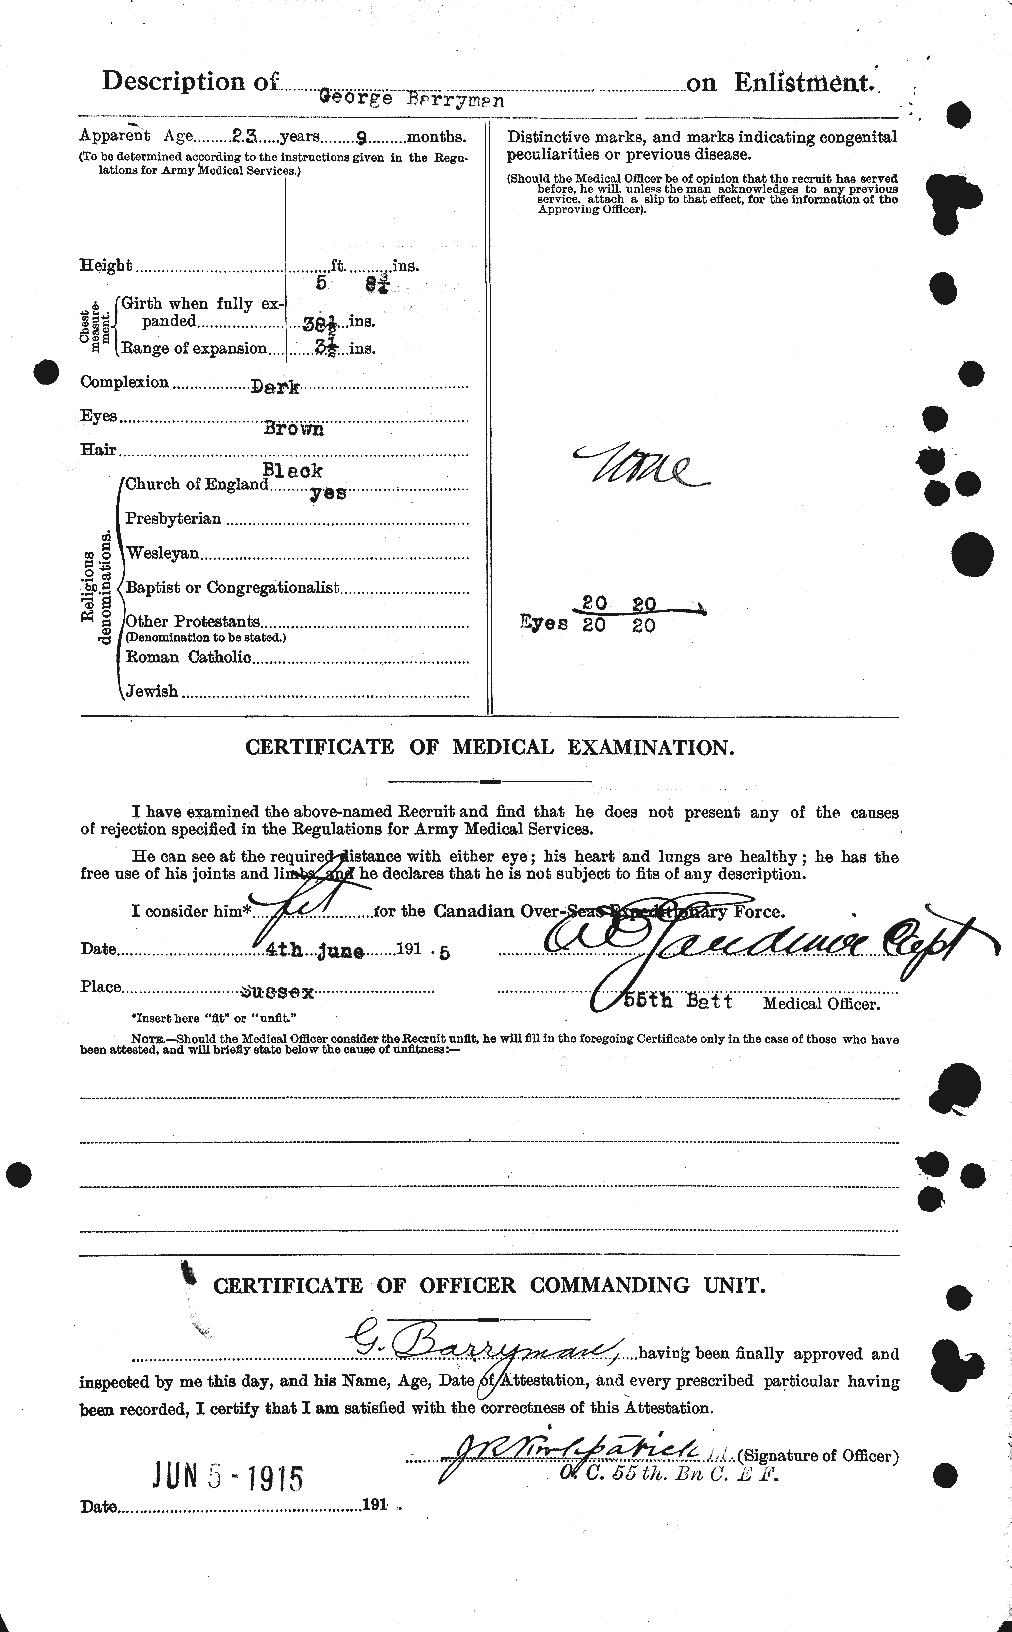 Dossiers du Personnel de la Première Guerre mondiale - CEC 235527b